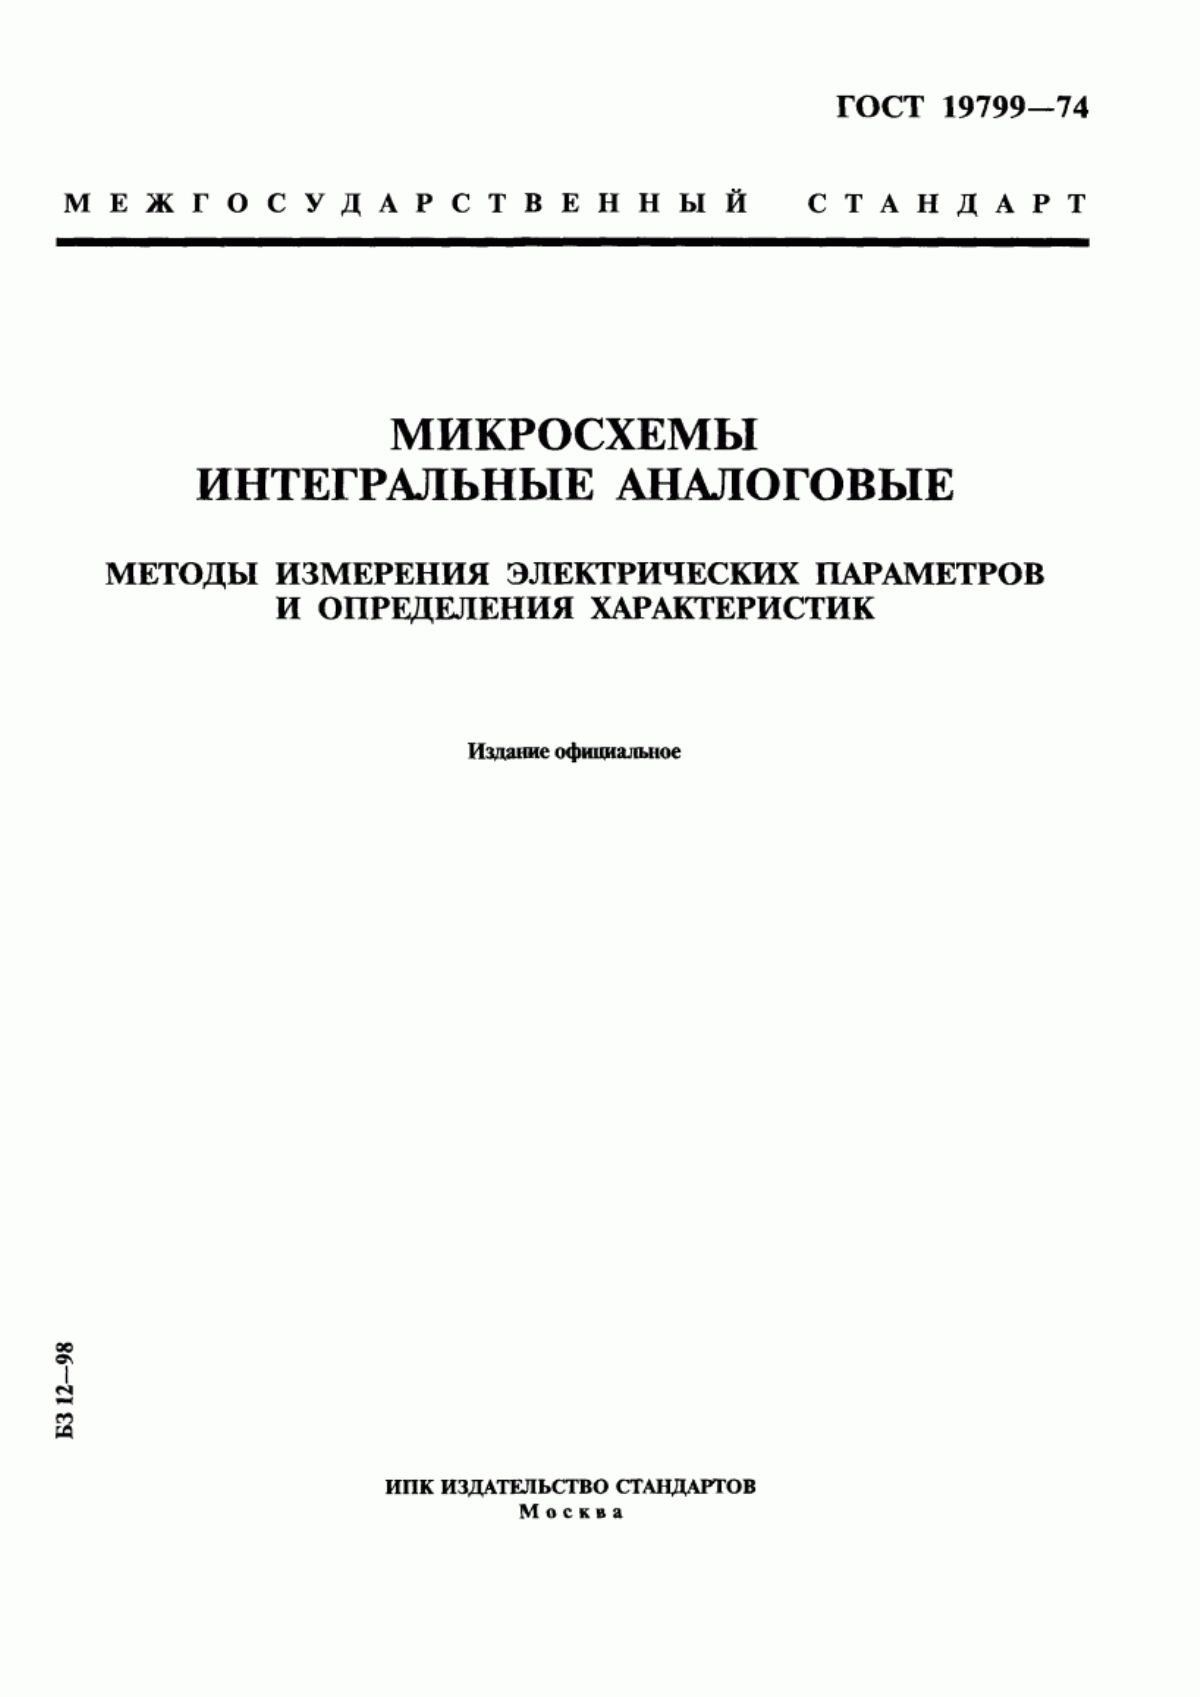 ГОСТ 19799-74 Микросхемы интегральные аналоговые. Методы измерения электрических параметров и определения характеристик